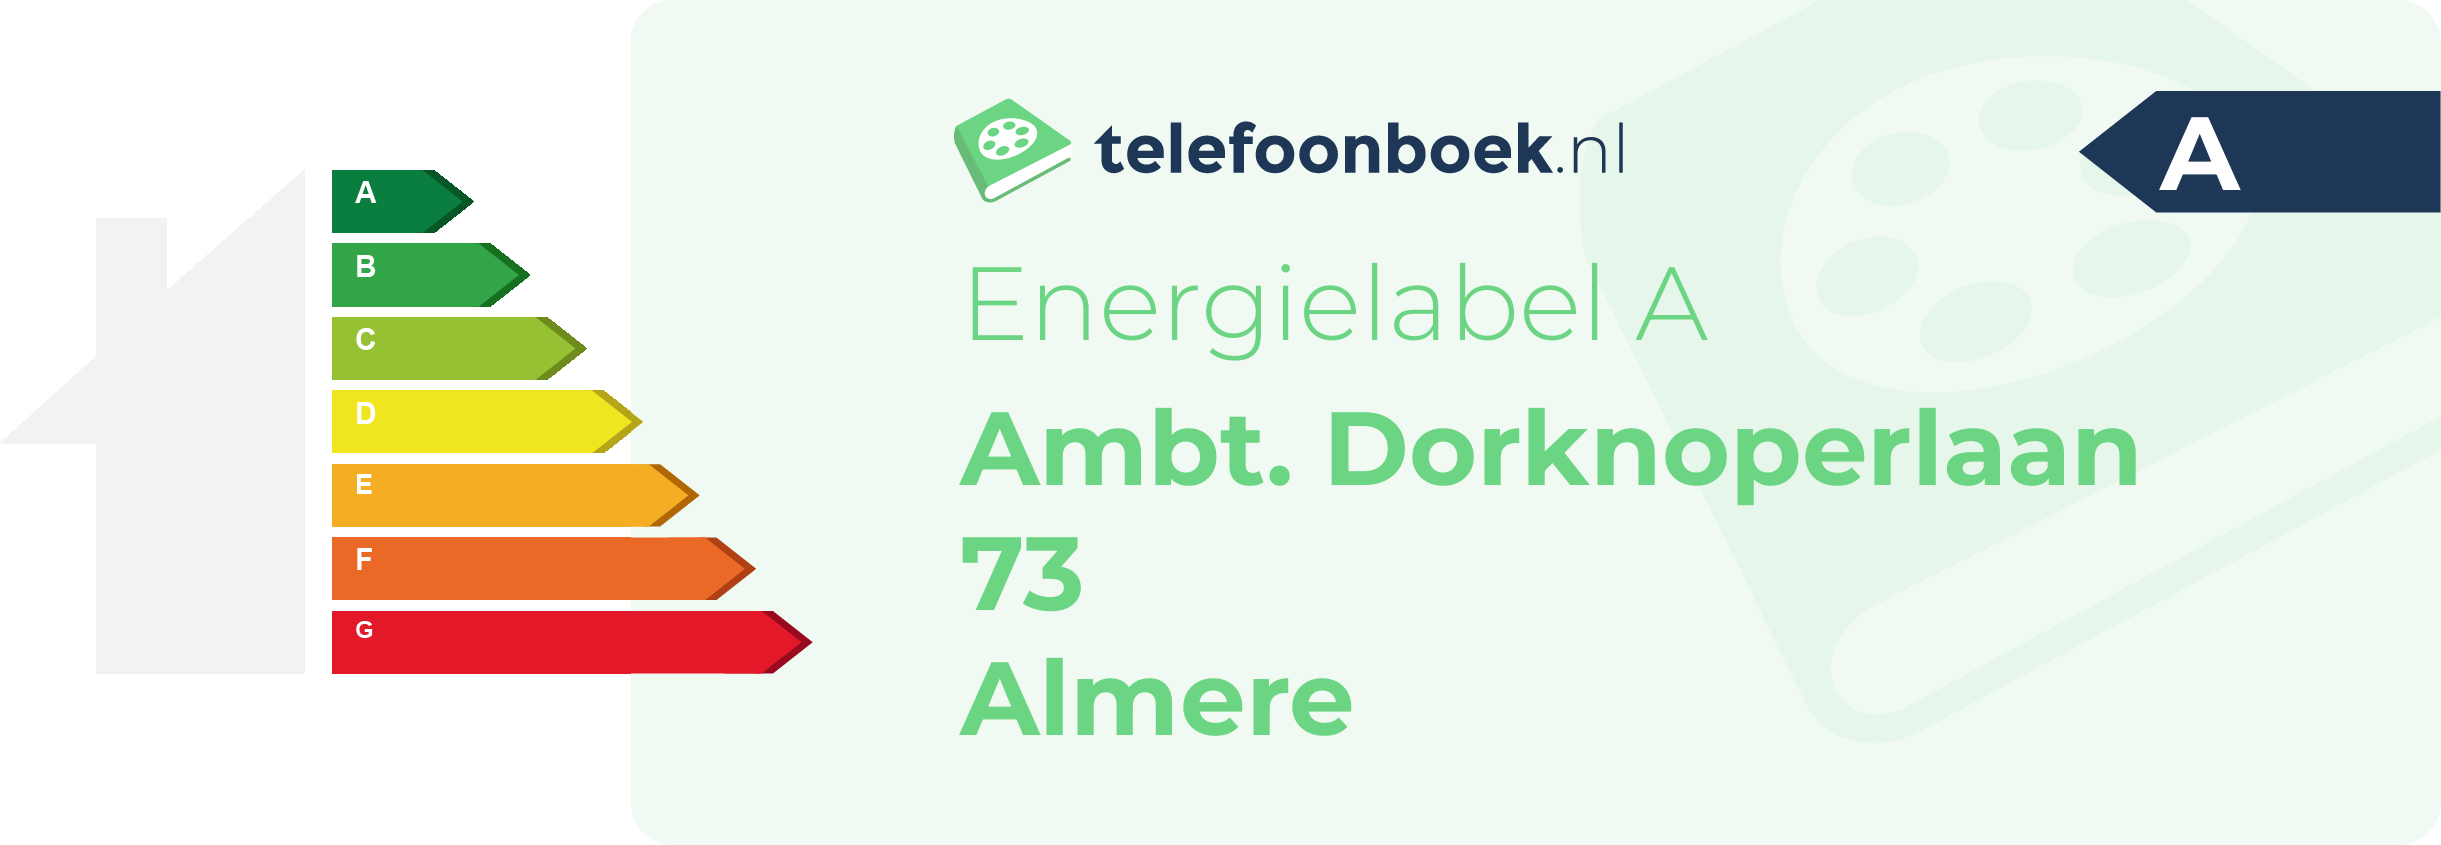 Energielabel Ambt. Dorknoperlaan 73 Almere